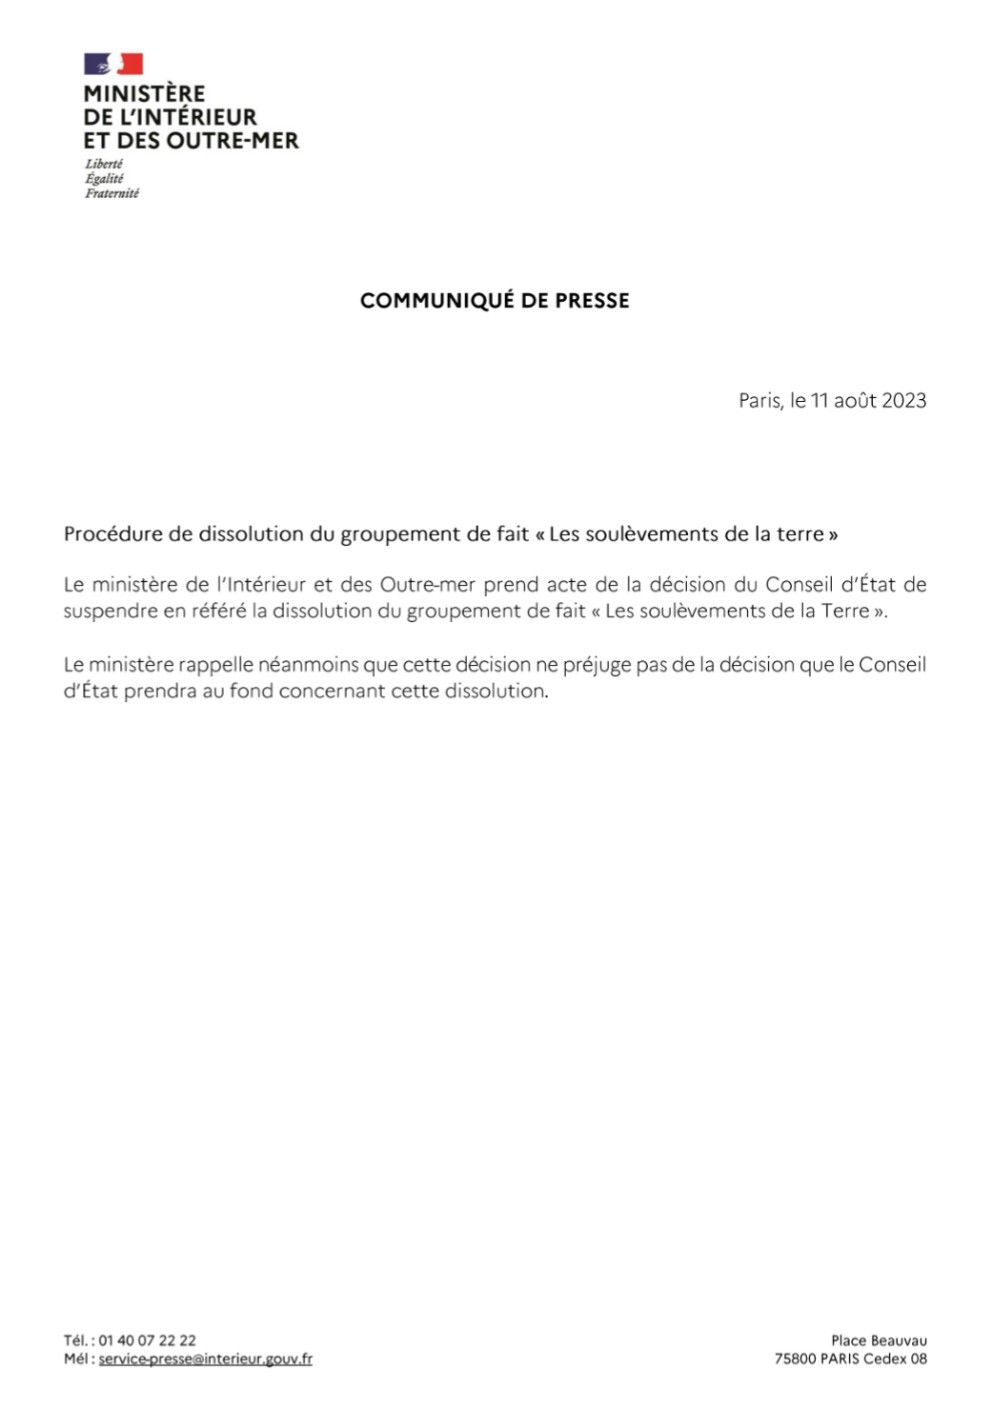 Communiqué de presse du Ministère de l'intérieur qui prend acte de la suspension de la dissolution des Soulèvements de la Terre.